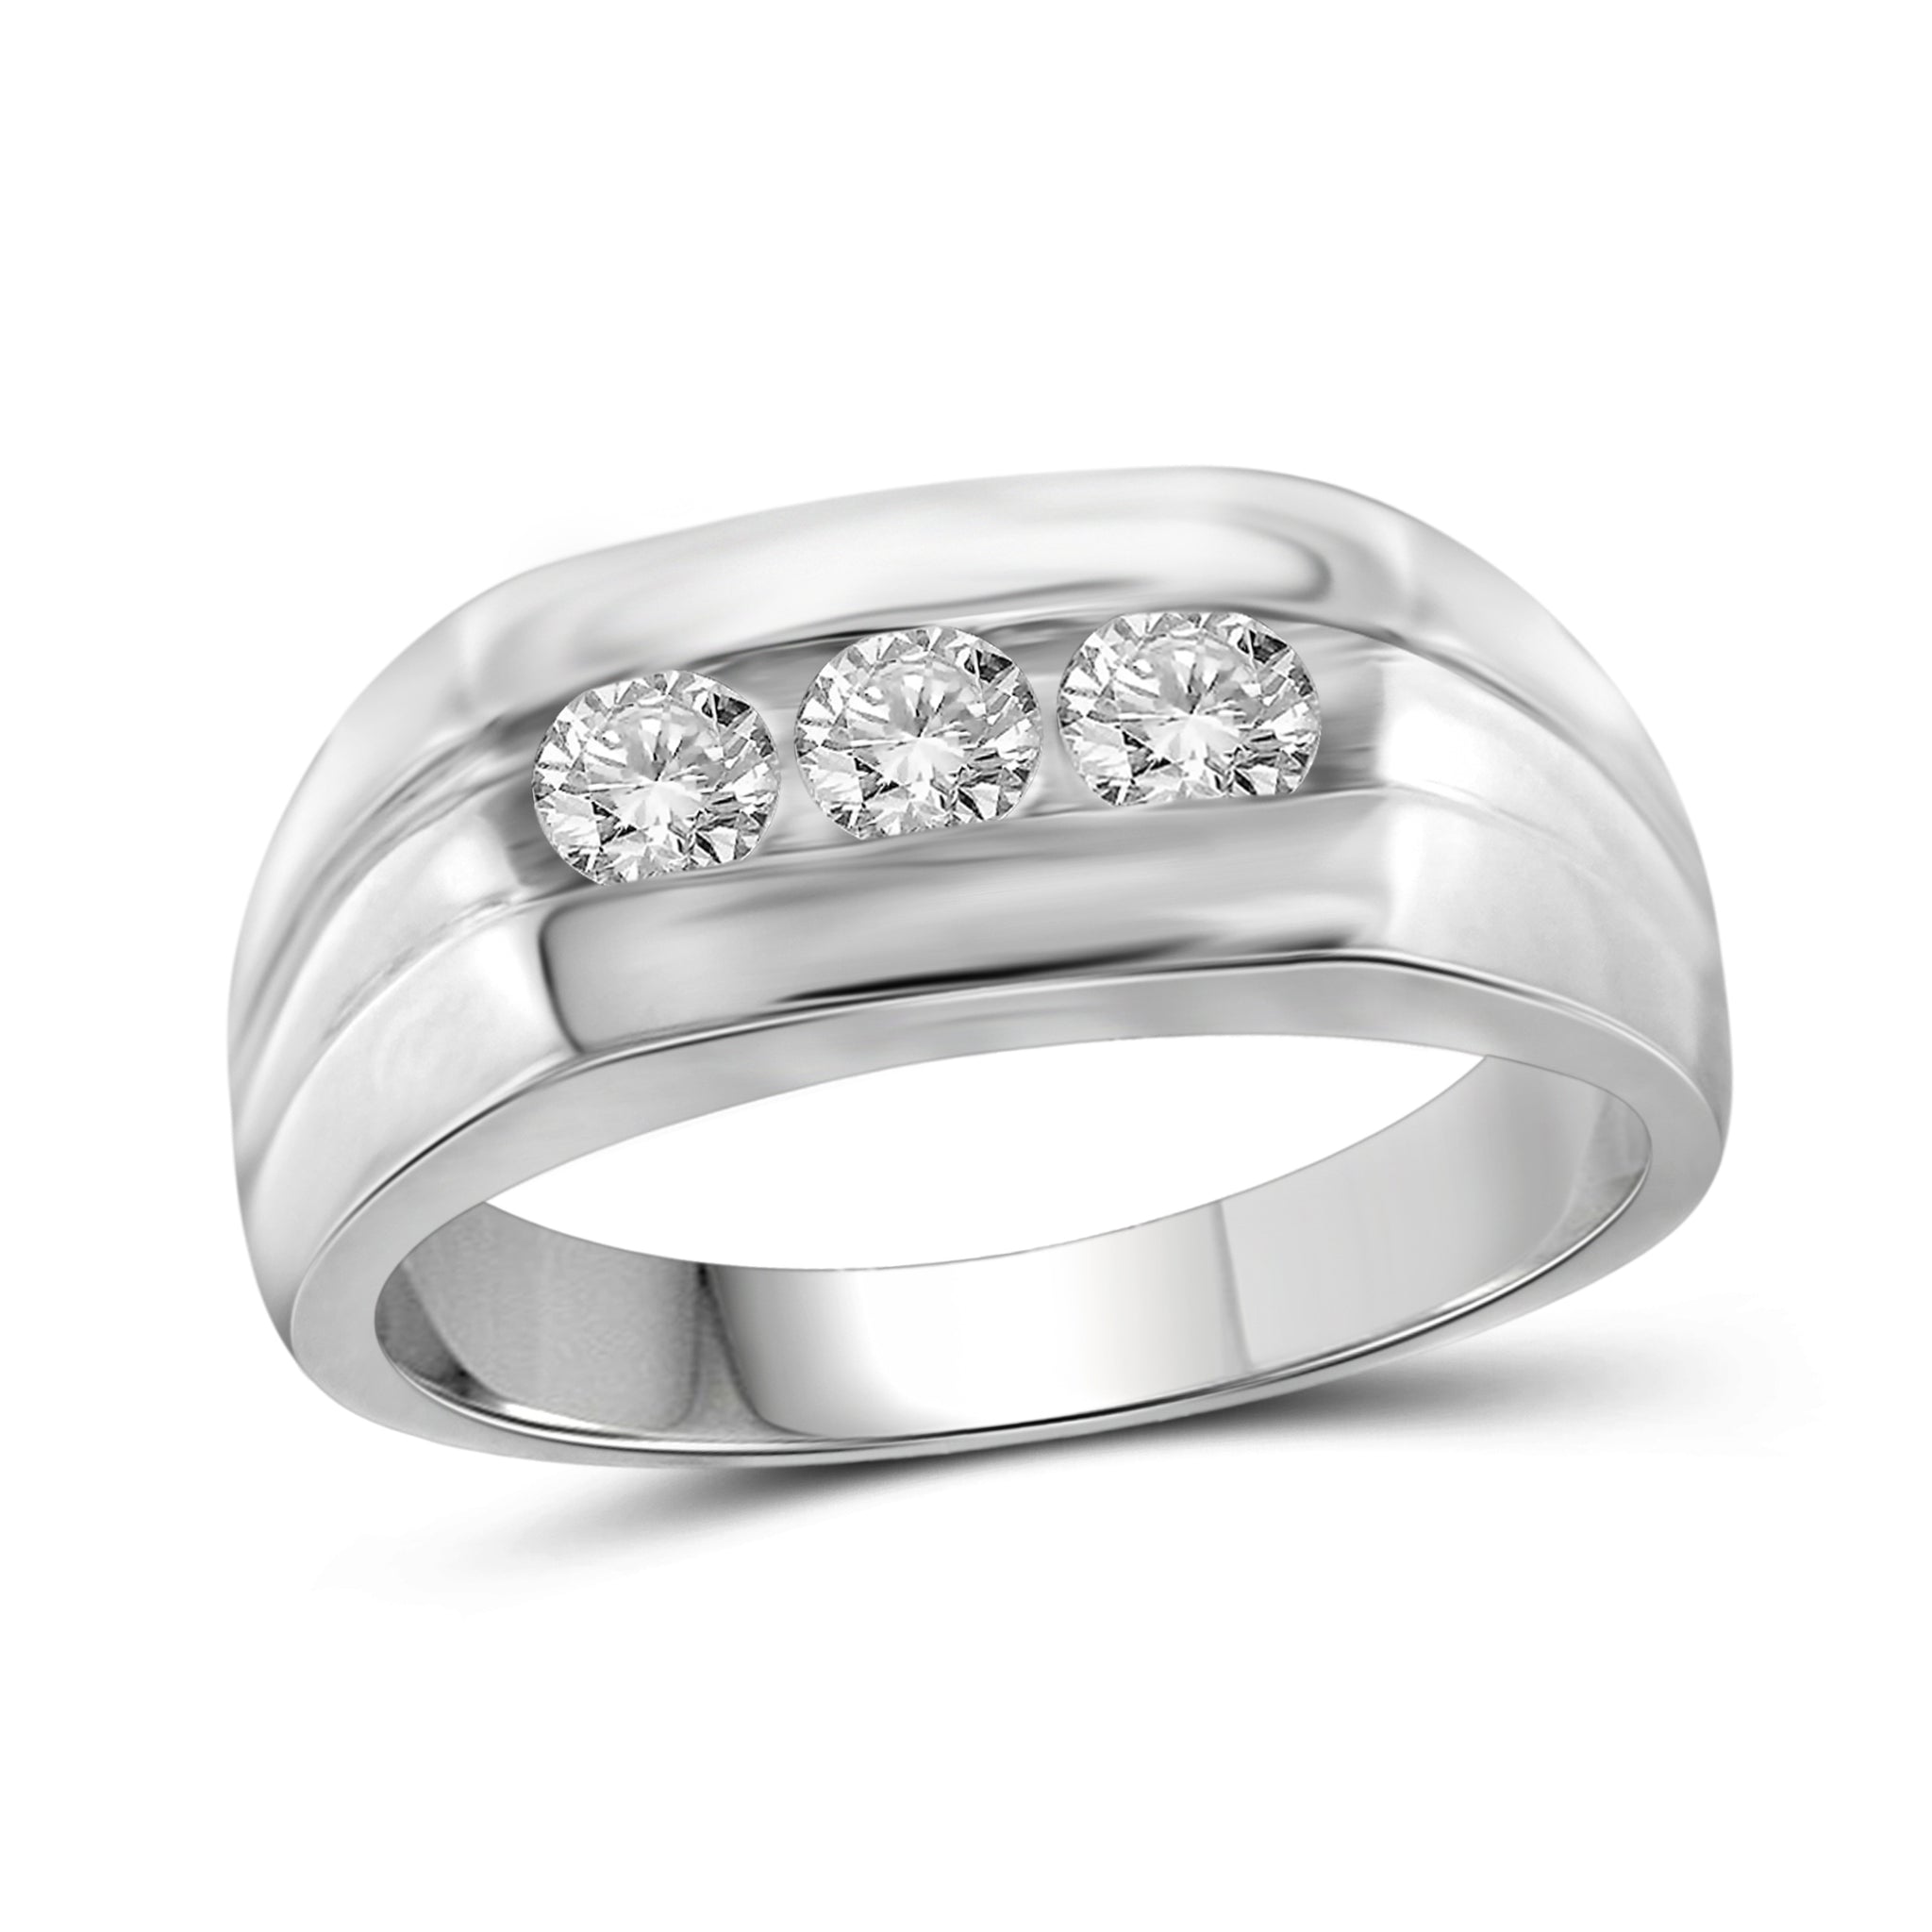 Jewelnova 3/4 Carat T.W. White Diamond 10k White Gold Men's Ring